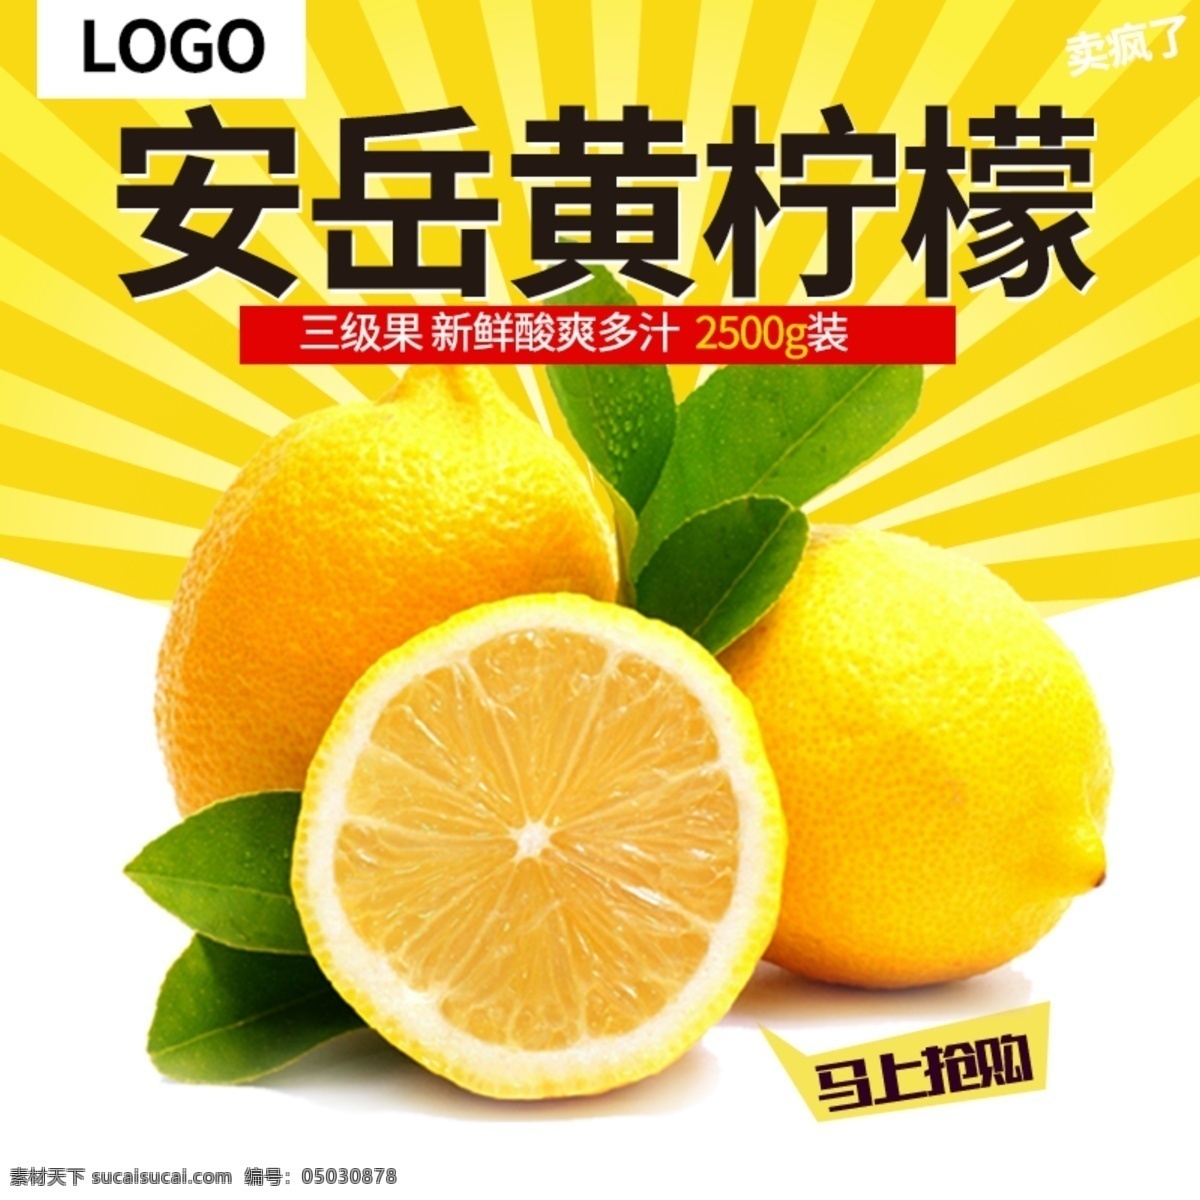 水果 柠檬 橘子 主 图 直通车 水果直通车 水果主图